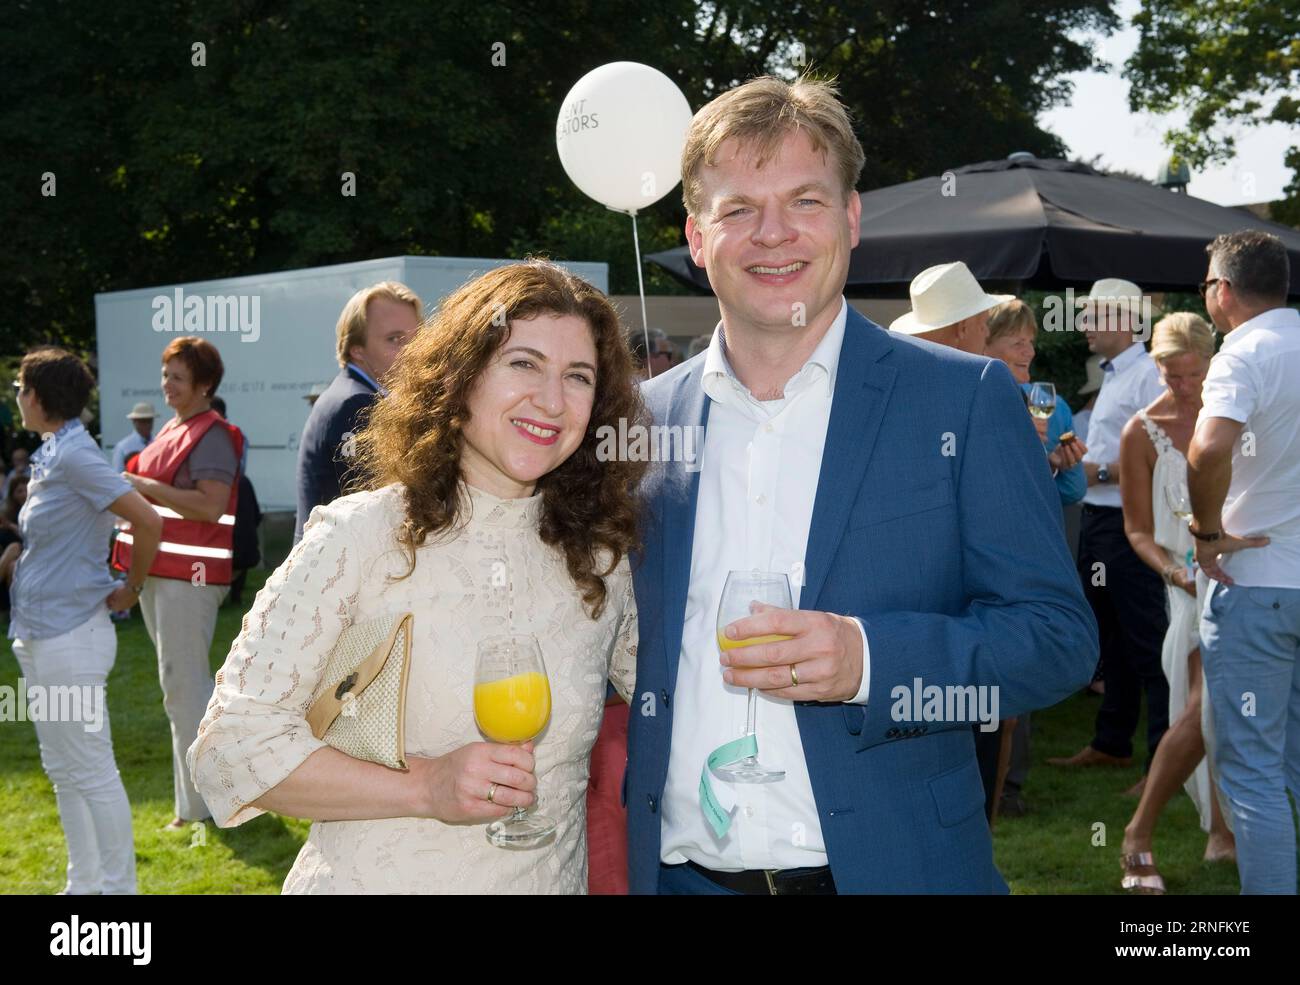 DE LUTTE, PAYS-BAS - 30 AOÛT 2015 : le politicien néerlandais Pieter Omtzigt avec son épouse Ayfer Koc Banque D'Images